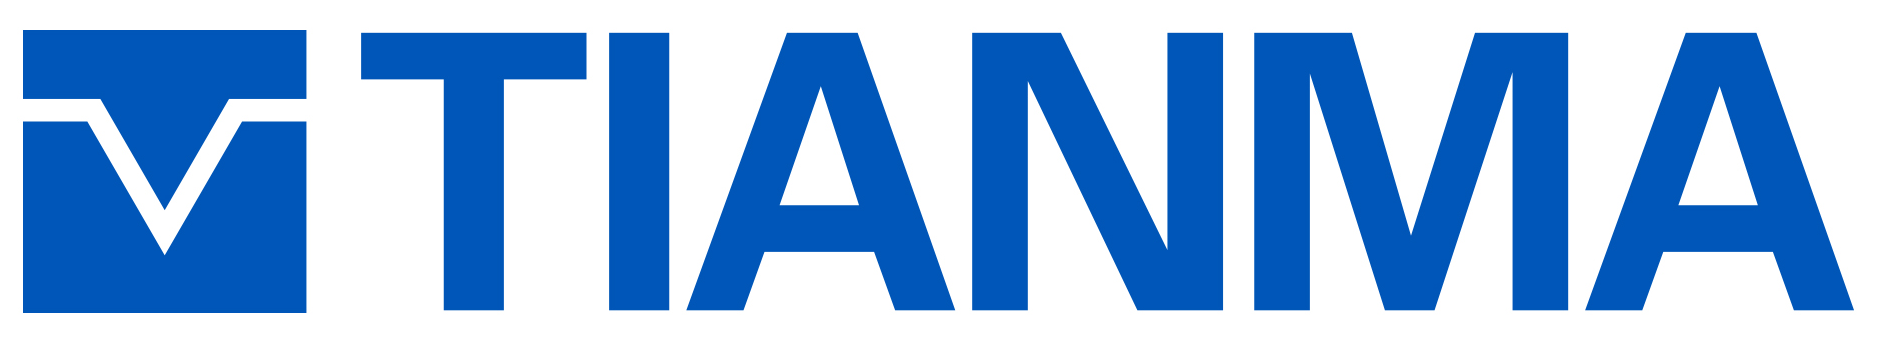 tianma logo